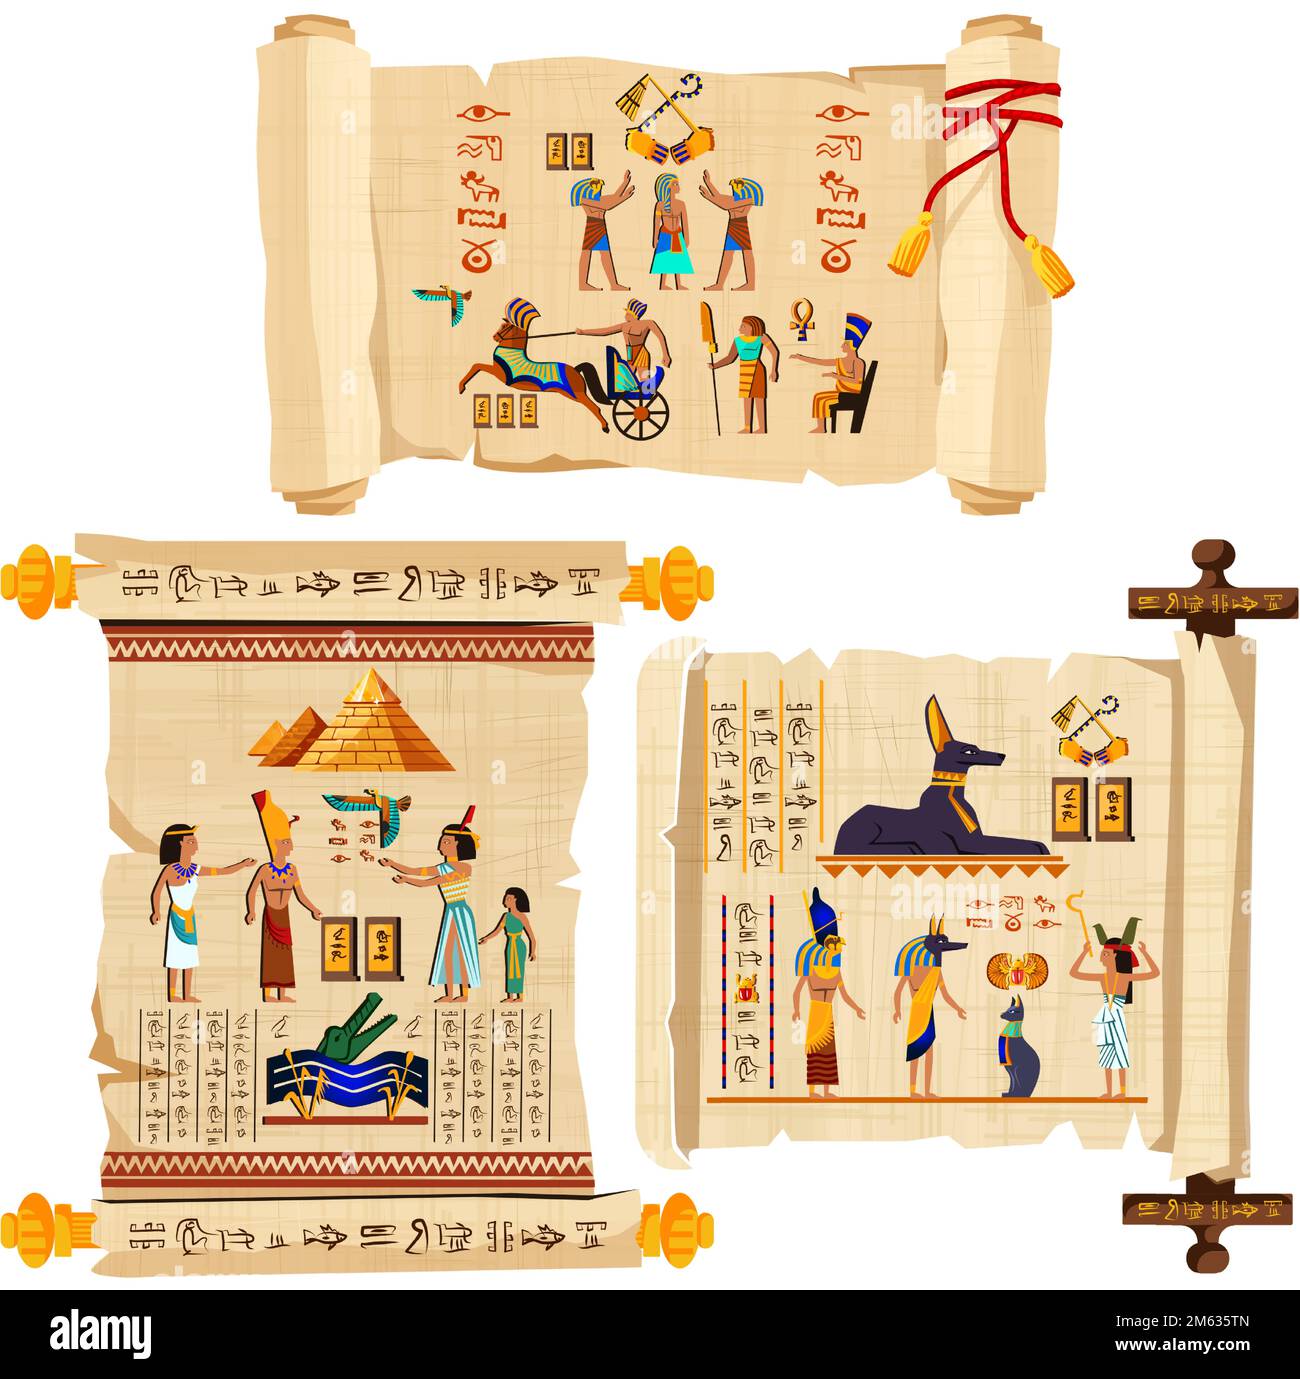 Alte ägyptische Papyrus-Scroll-Cartoon-Vektorsammlung mit Hieroglyphen und ägyptischen Kultursymbolen, antiken Göttern, Pyramiden, Skarabäen und menschlichen Figuren. Mit roter Schnur dekoriert und isoliert Stock Vektor